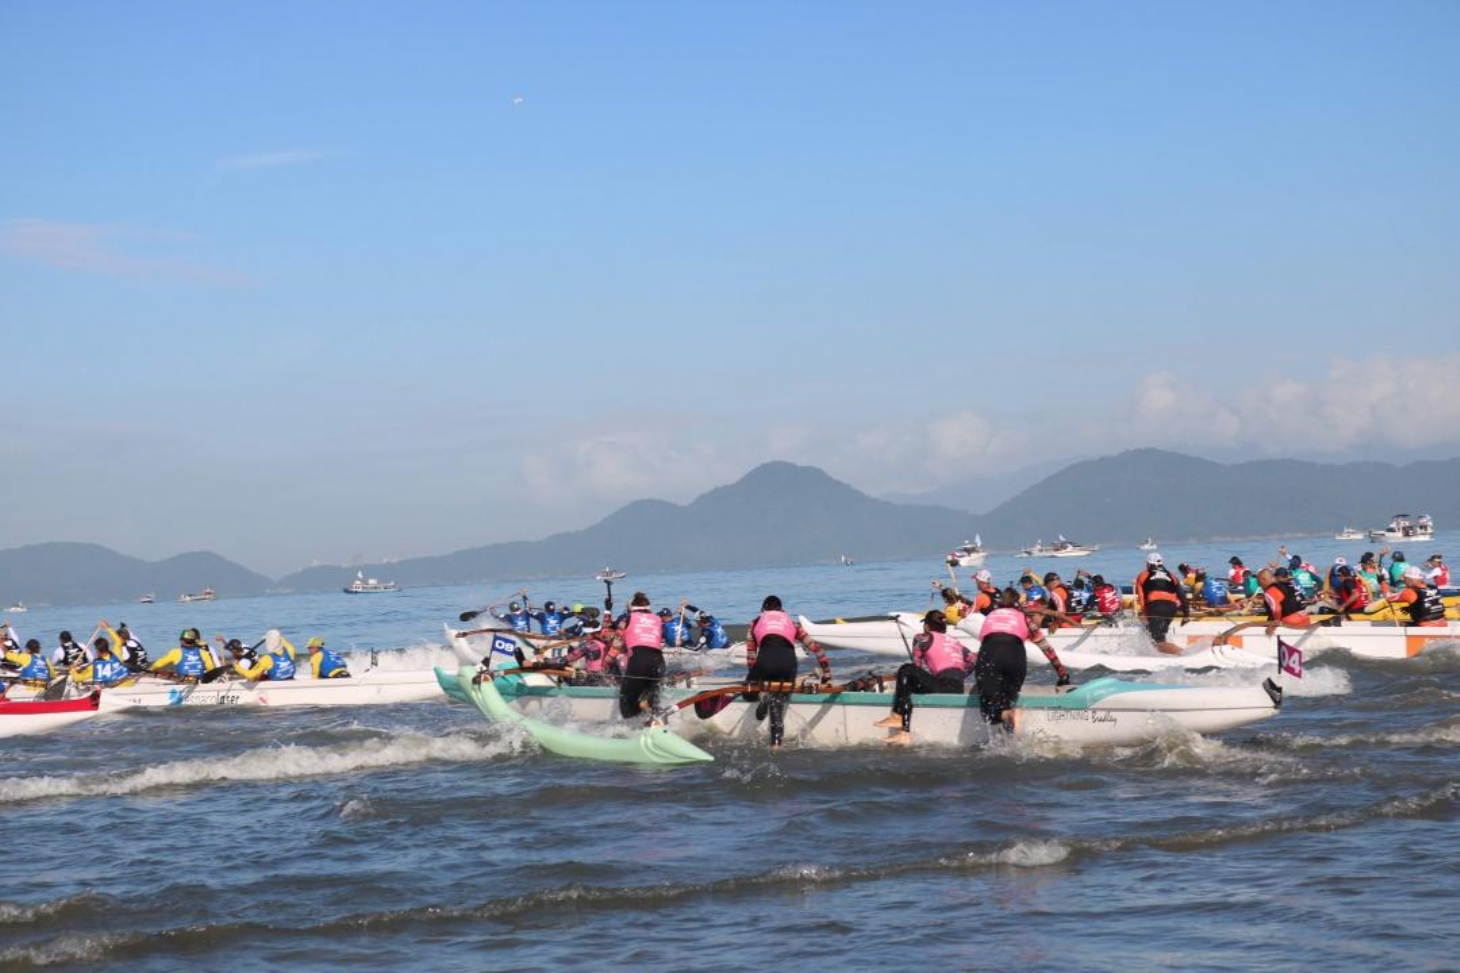 Festival de canoa havaiana vai levar mais de 400 atletas para o mar | Jornal da Orla